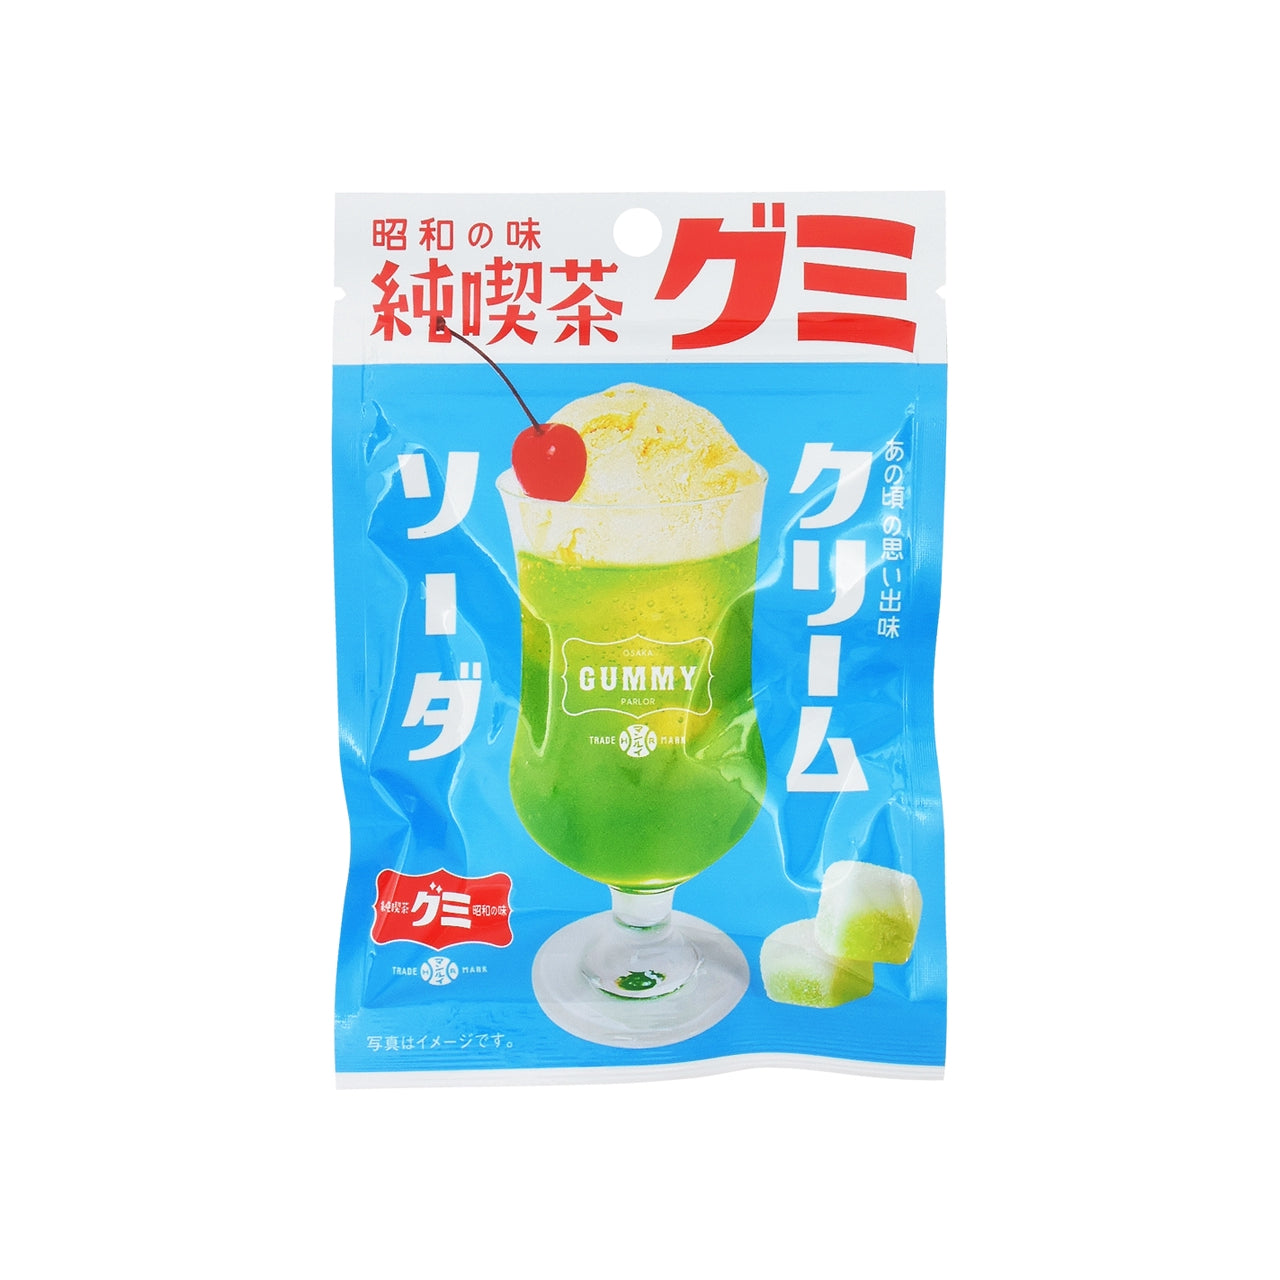 昭和純喫茶グミクリームソーダ 40g